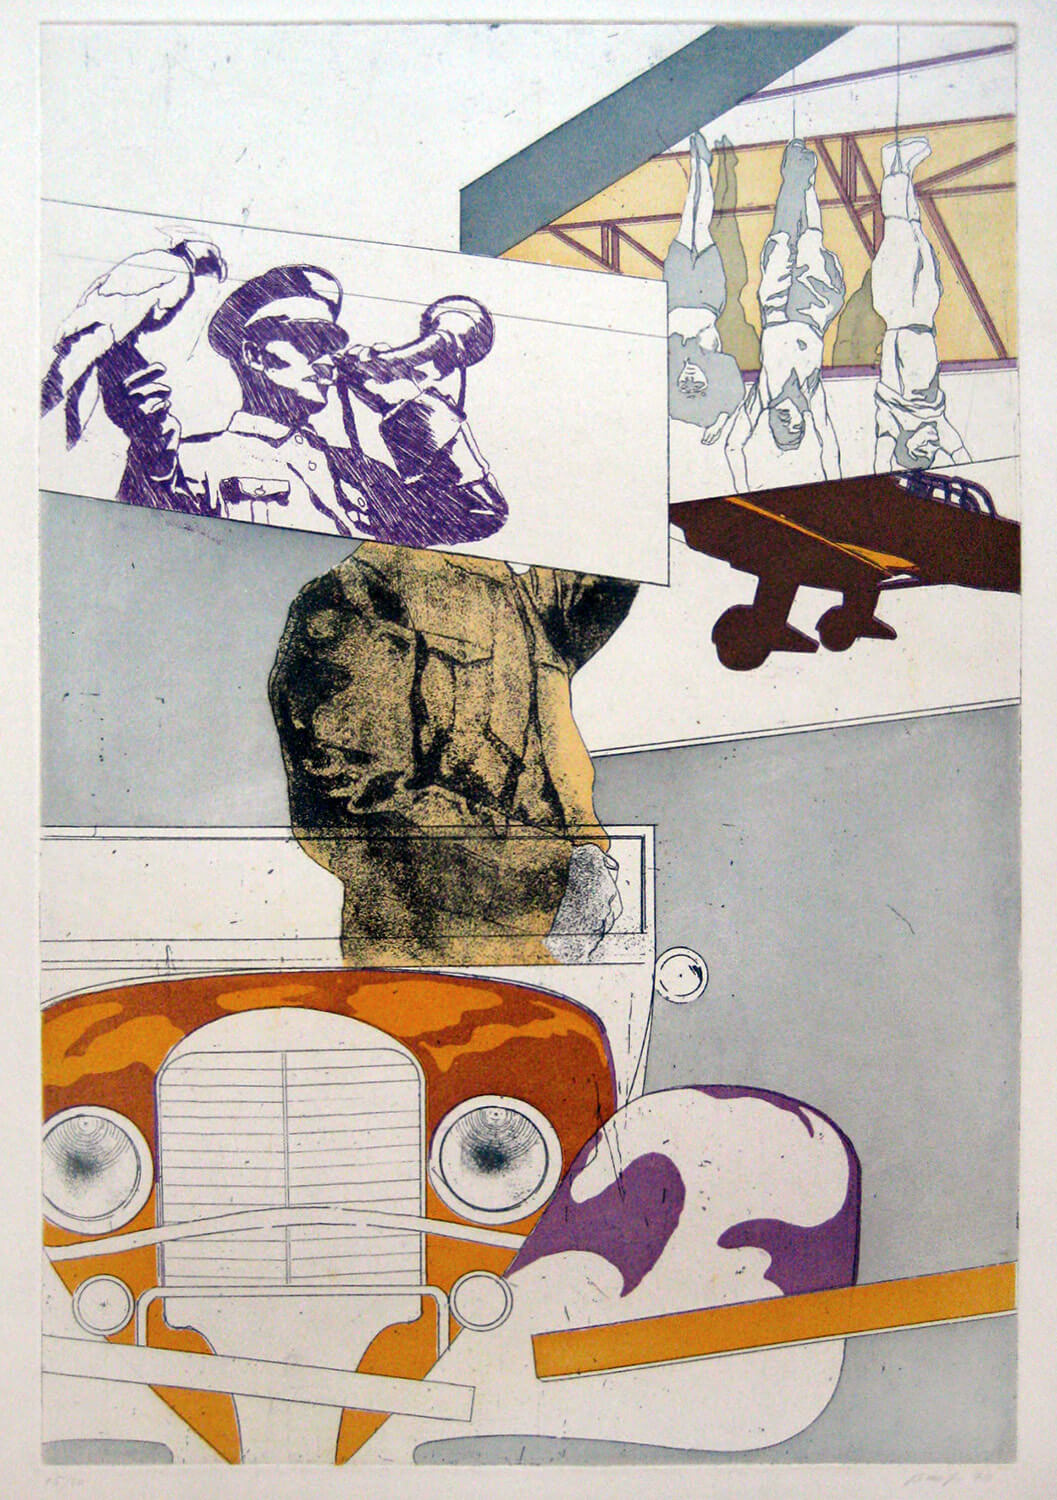 Ulrich Baehr, Sonderbeitrag: Einen Augenblick ruht die Arbeit. Der Führer fährt vorbei, 1970, Farbradierung, Auflage: 20, 76 x 54 cm, Mappe mit 5 Motiven